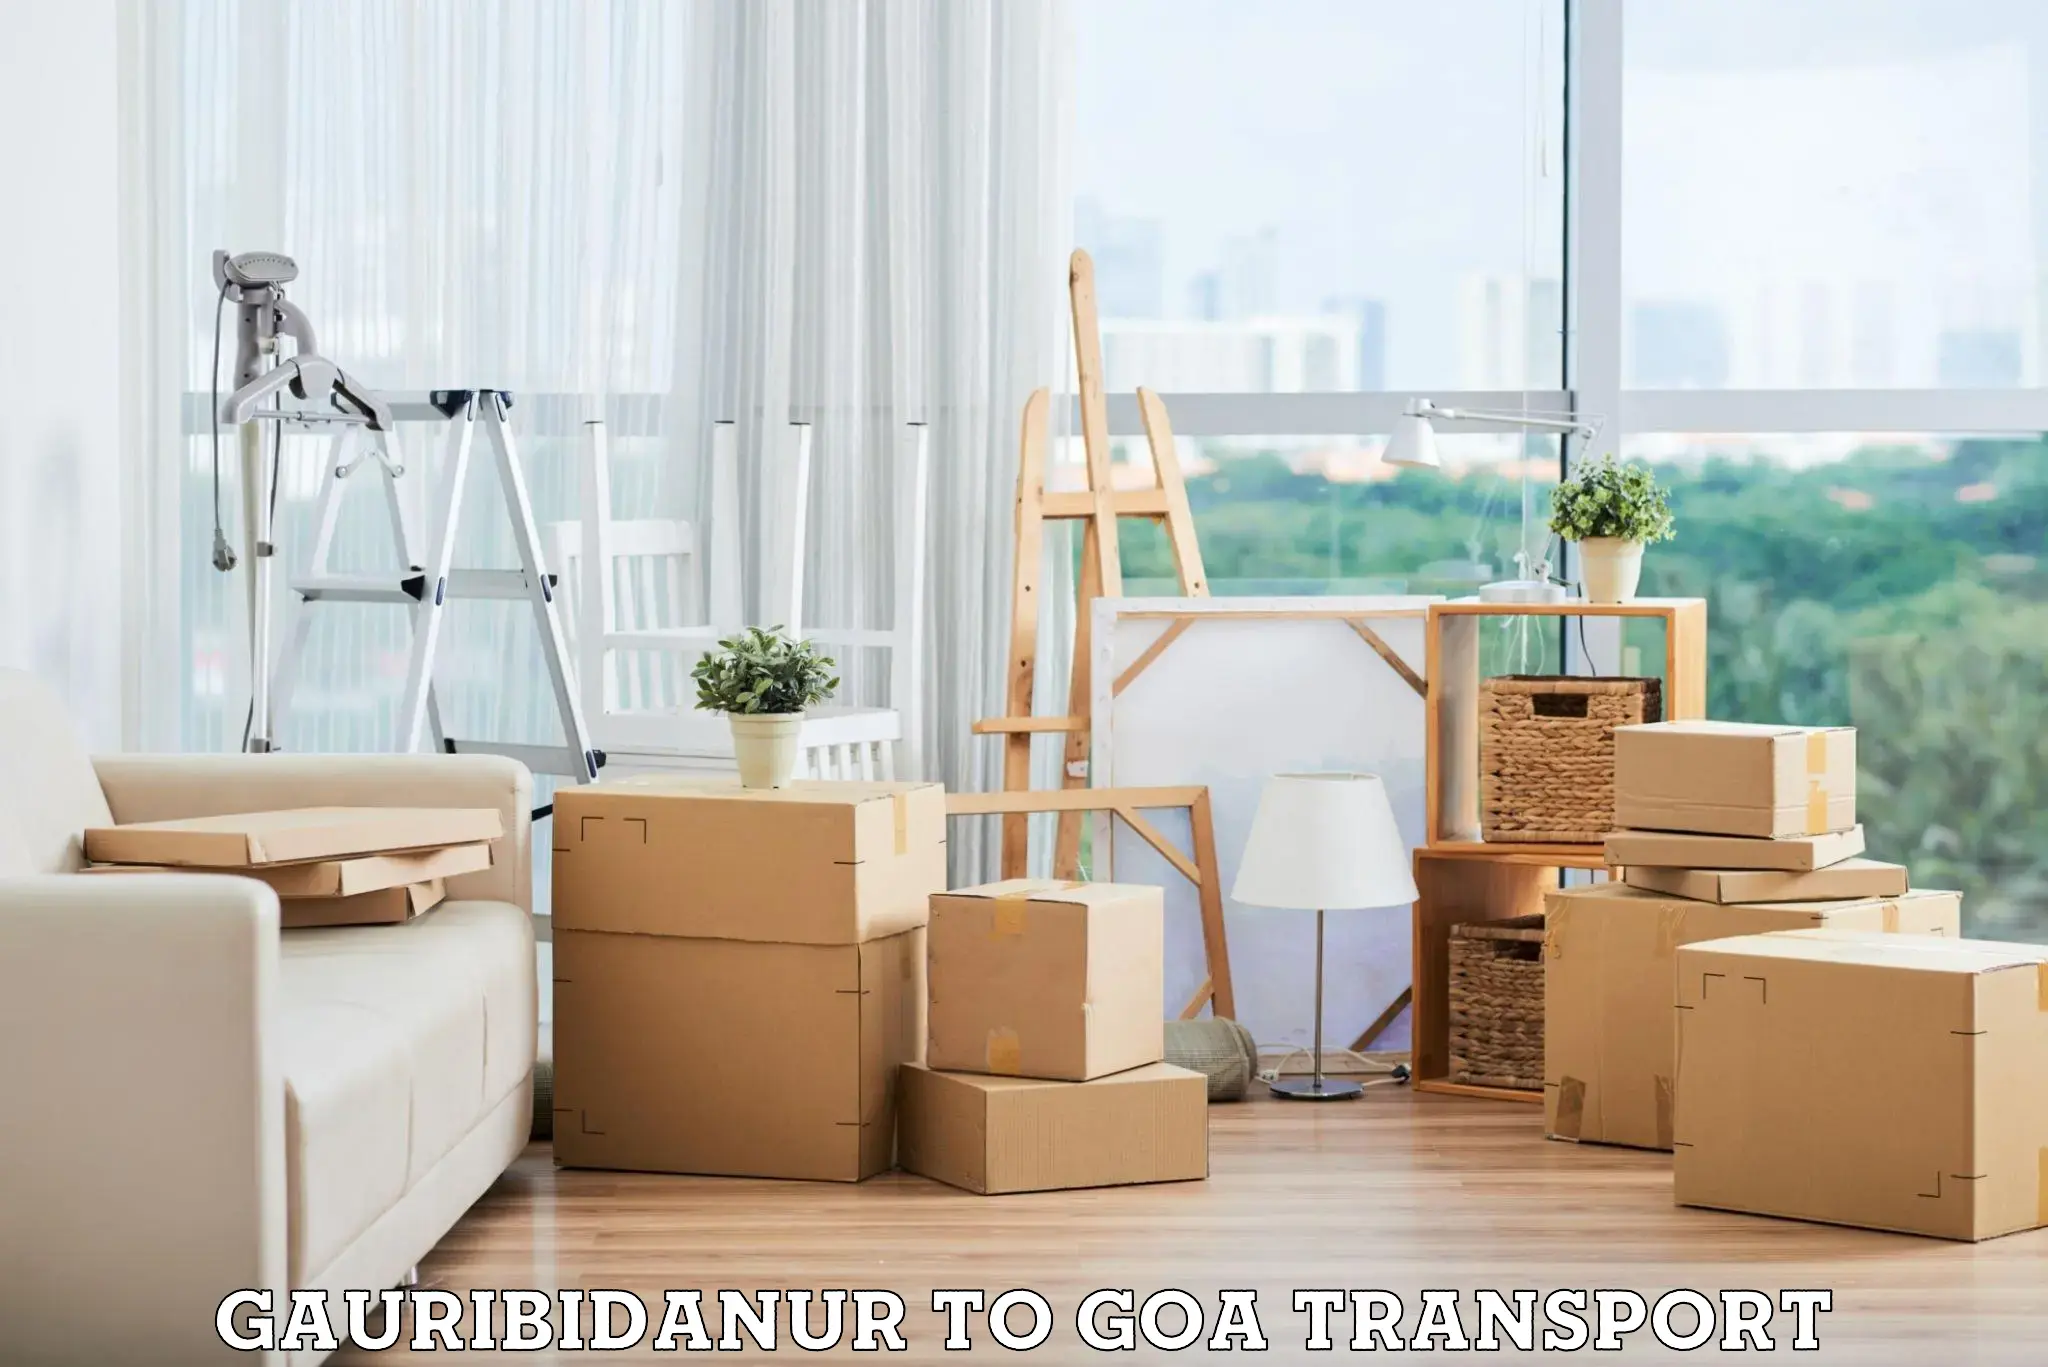 Cargo transport services Gauribidanur to Goa